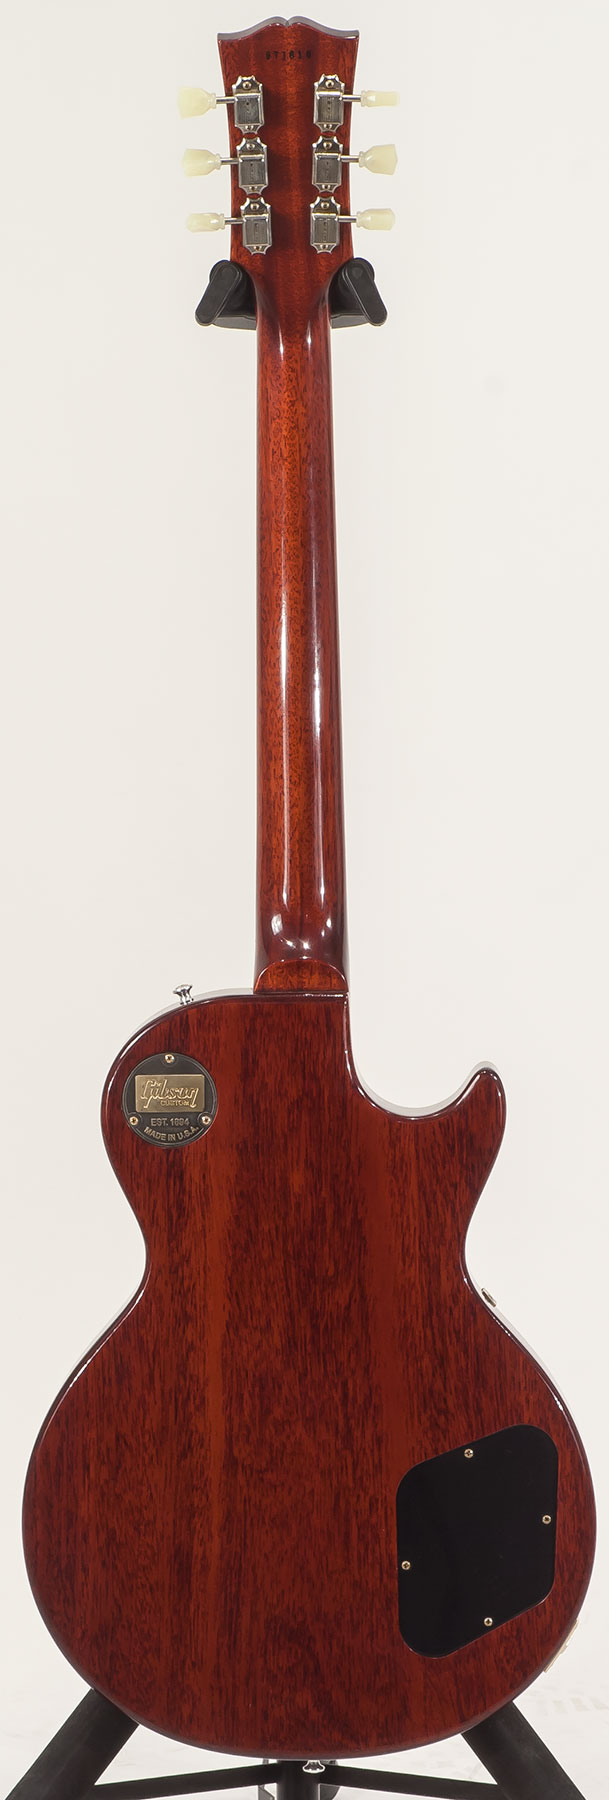 Gibson Custom Shop M2m Les Paul Standard 1959 Lh Gaucher Ltd 2h Ht Rw #971610 - Vos Washed Cherry - Linkshandige elektrische gitaar - Variation 1